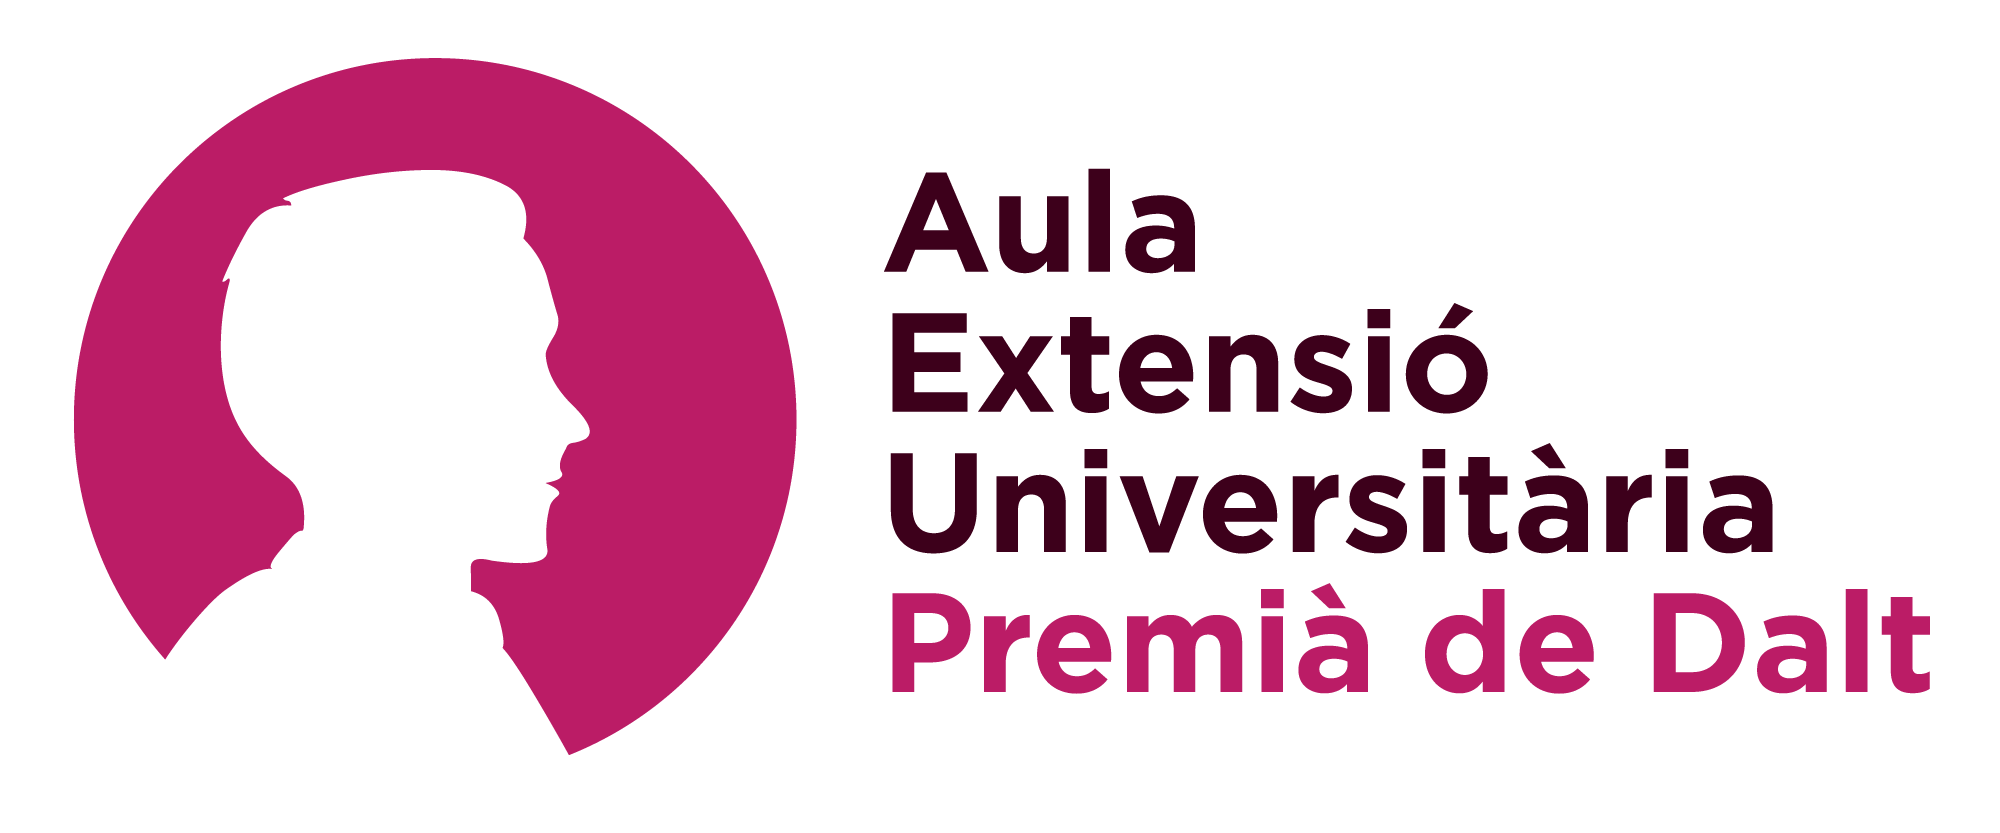 AEU PDD – Aula d'Extensió Universitària de Premià de Dalt: aeu@aulapremiadedalt.cat